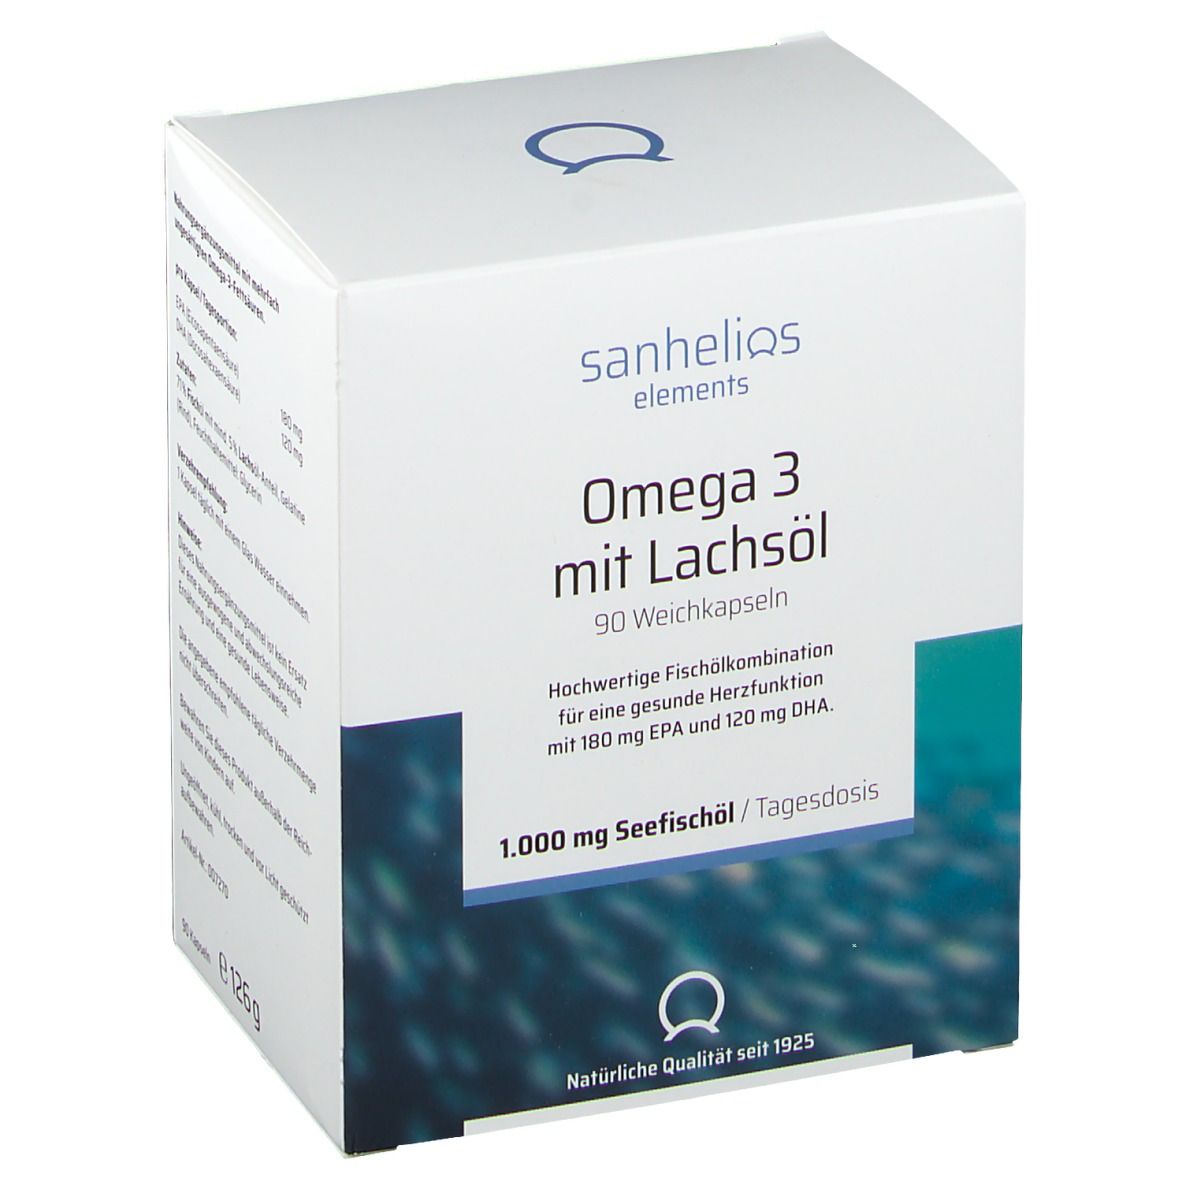 Image of Sanhelios Omega 3 mit Lachsöl